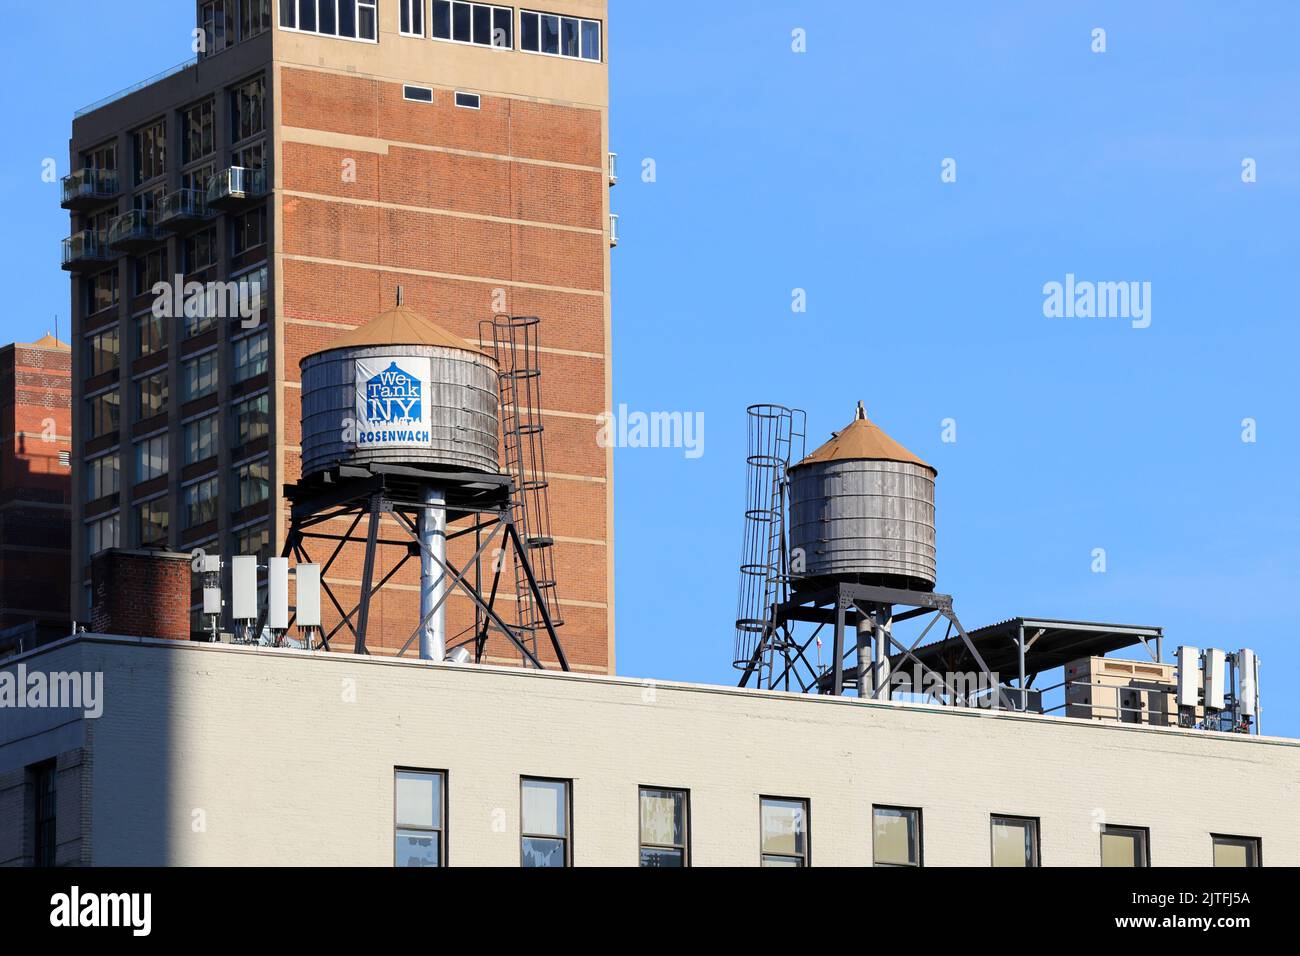 Réservoirs d'eau en bois Rosenwach sur un toit de New York. Les réservoirs d'eau sont utilisés pour stocker l'eau afin de maintenir la pression de l'eau dans un bâtiment. Banque D'Images